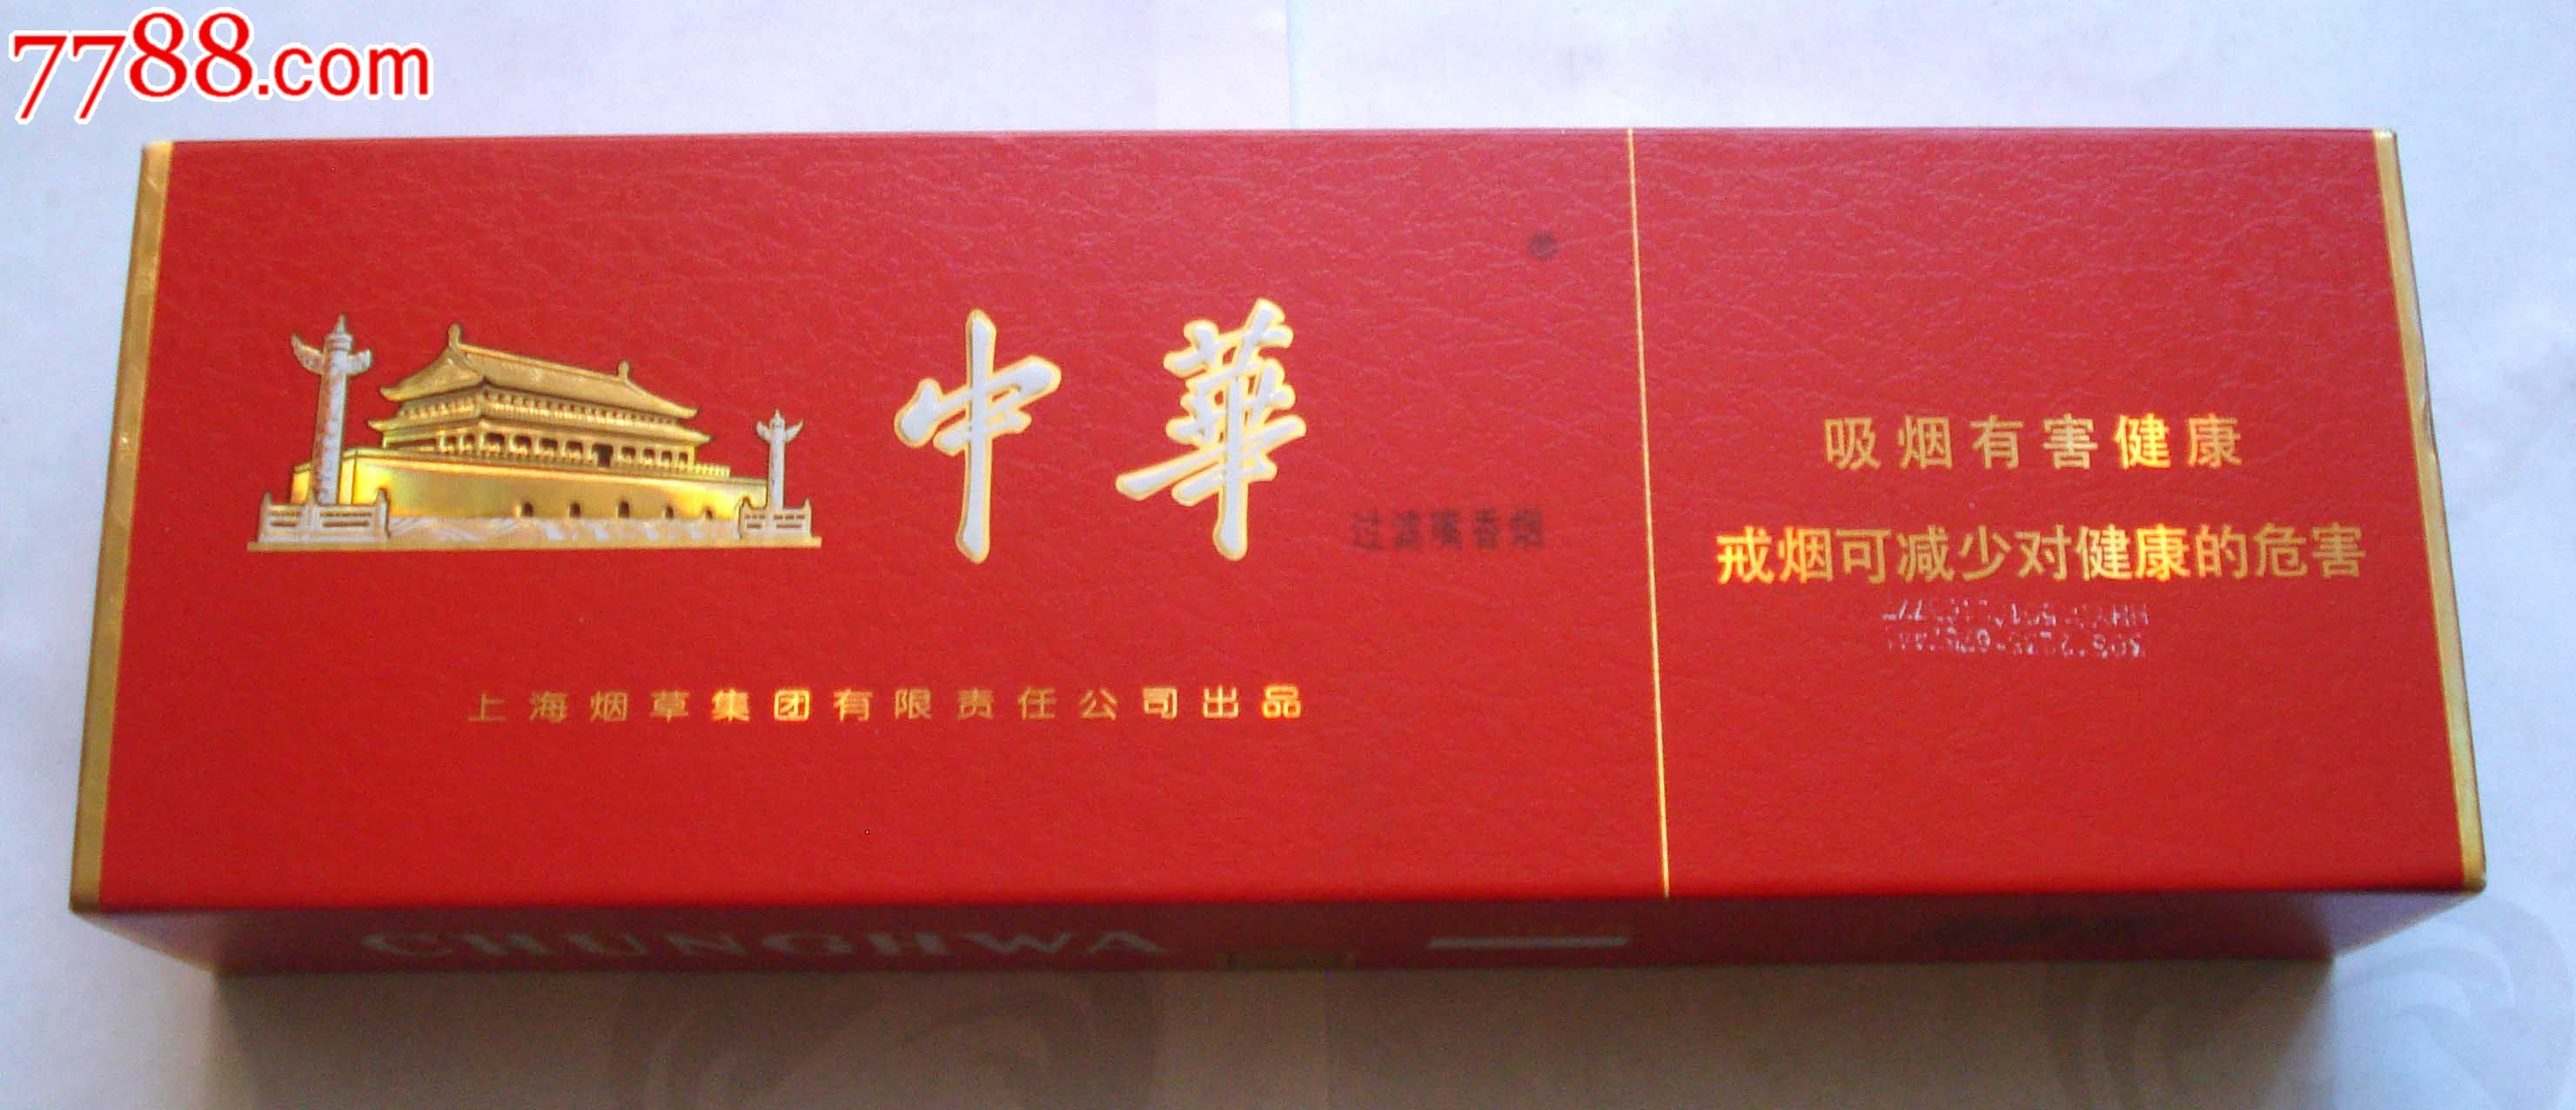 大中华条盒-价格:10.0000元-se22358826-烟标/烟盒